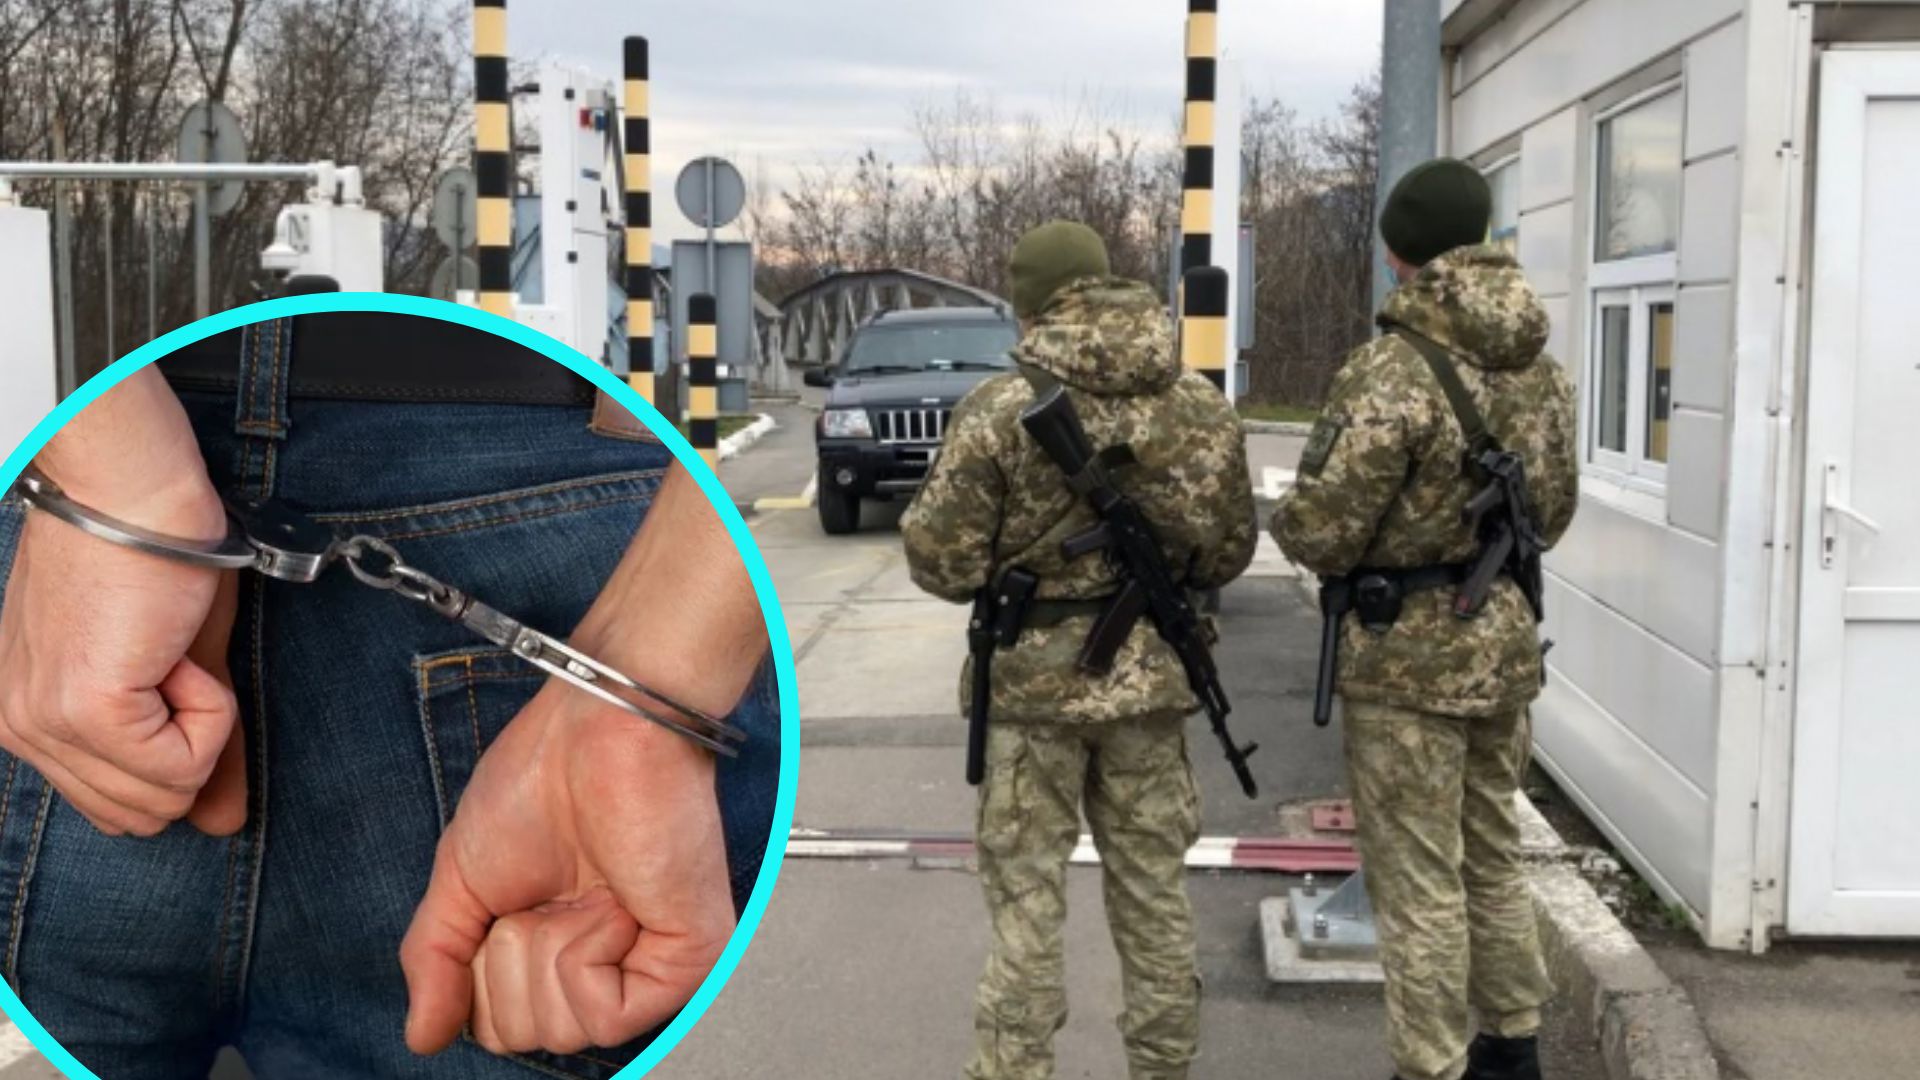 Військовозобов'язаних українців можуть після повернення додому притягнути до адміністративної відповідальності. Та є й суворіше покарання.